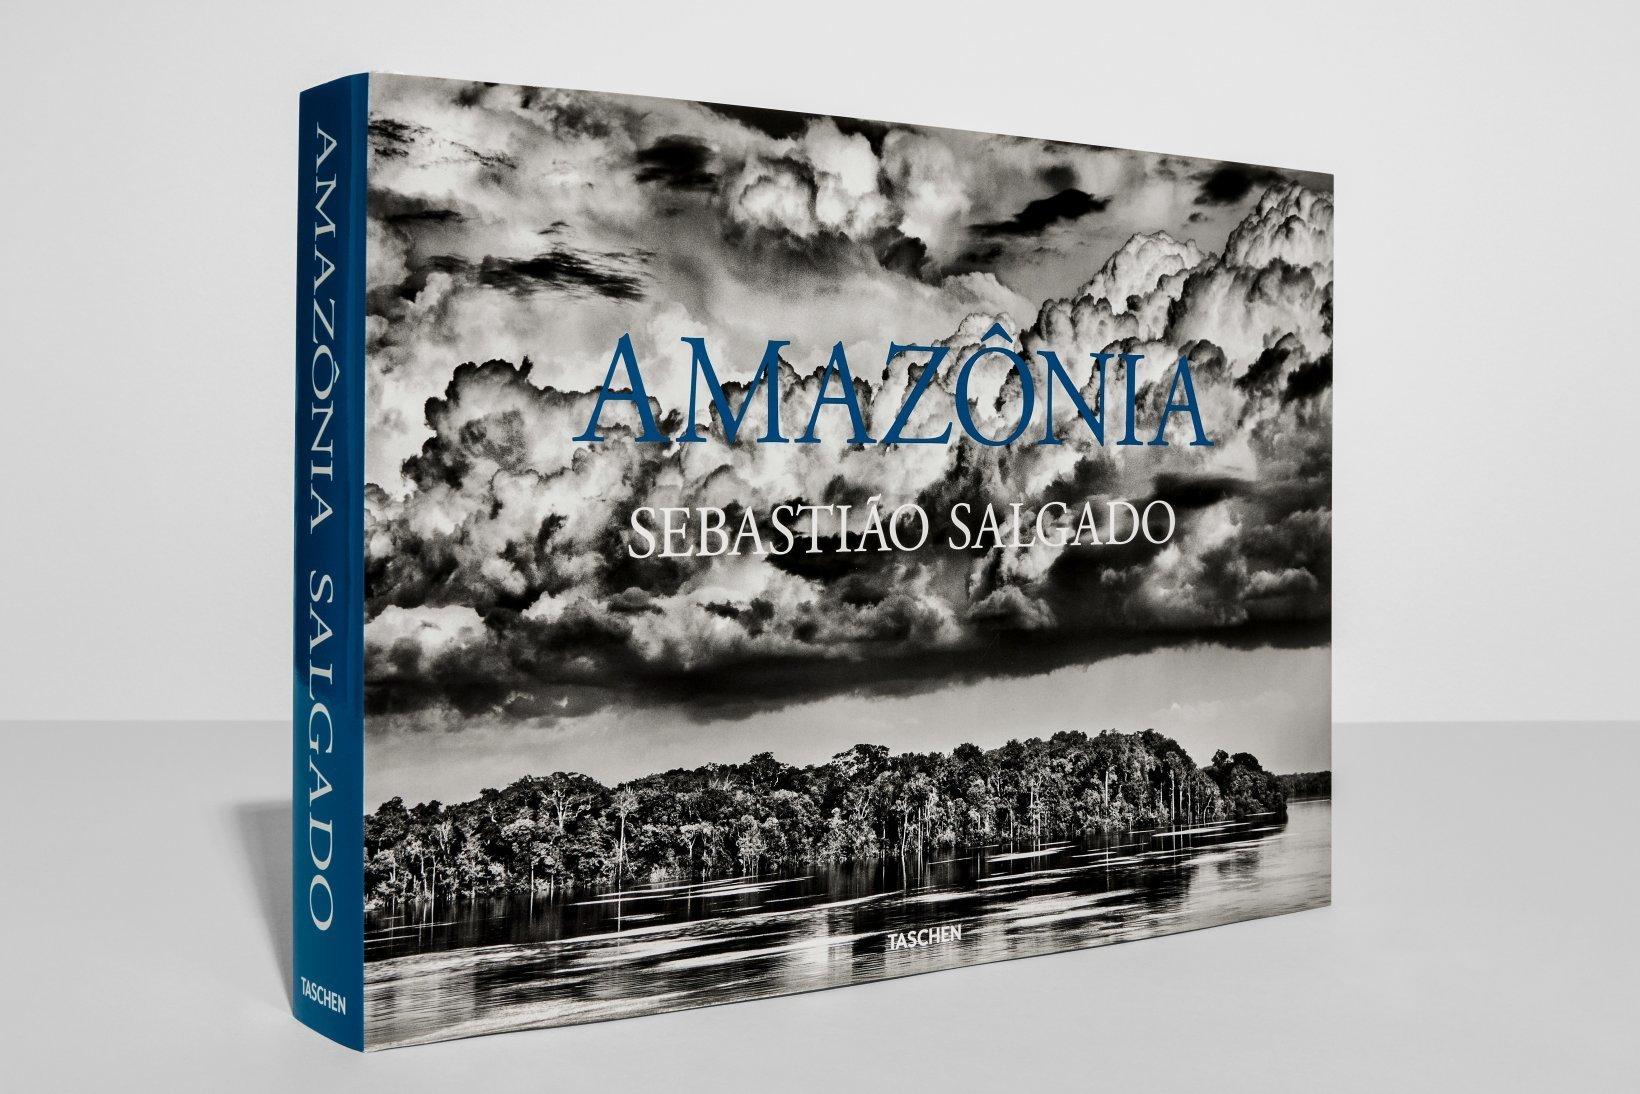 Hardcover Fotobuch, 14.1 x 10.2 in., 9.21 lb, 528 Seiten.

Sechs Jahre lang bereiste Sebastião Salgado das brasilianische Amazonasgebiet und fotografierte die unvergleichliche Schönheit dieser außergewöhnlichen Region: den Regenwald, die Flüsse,